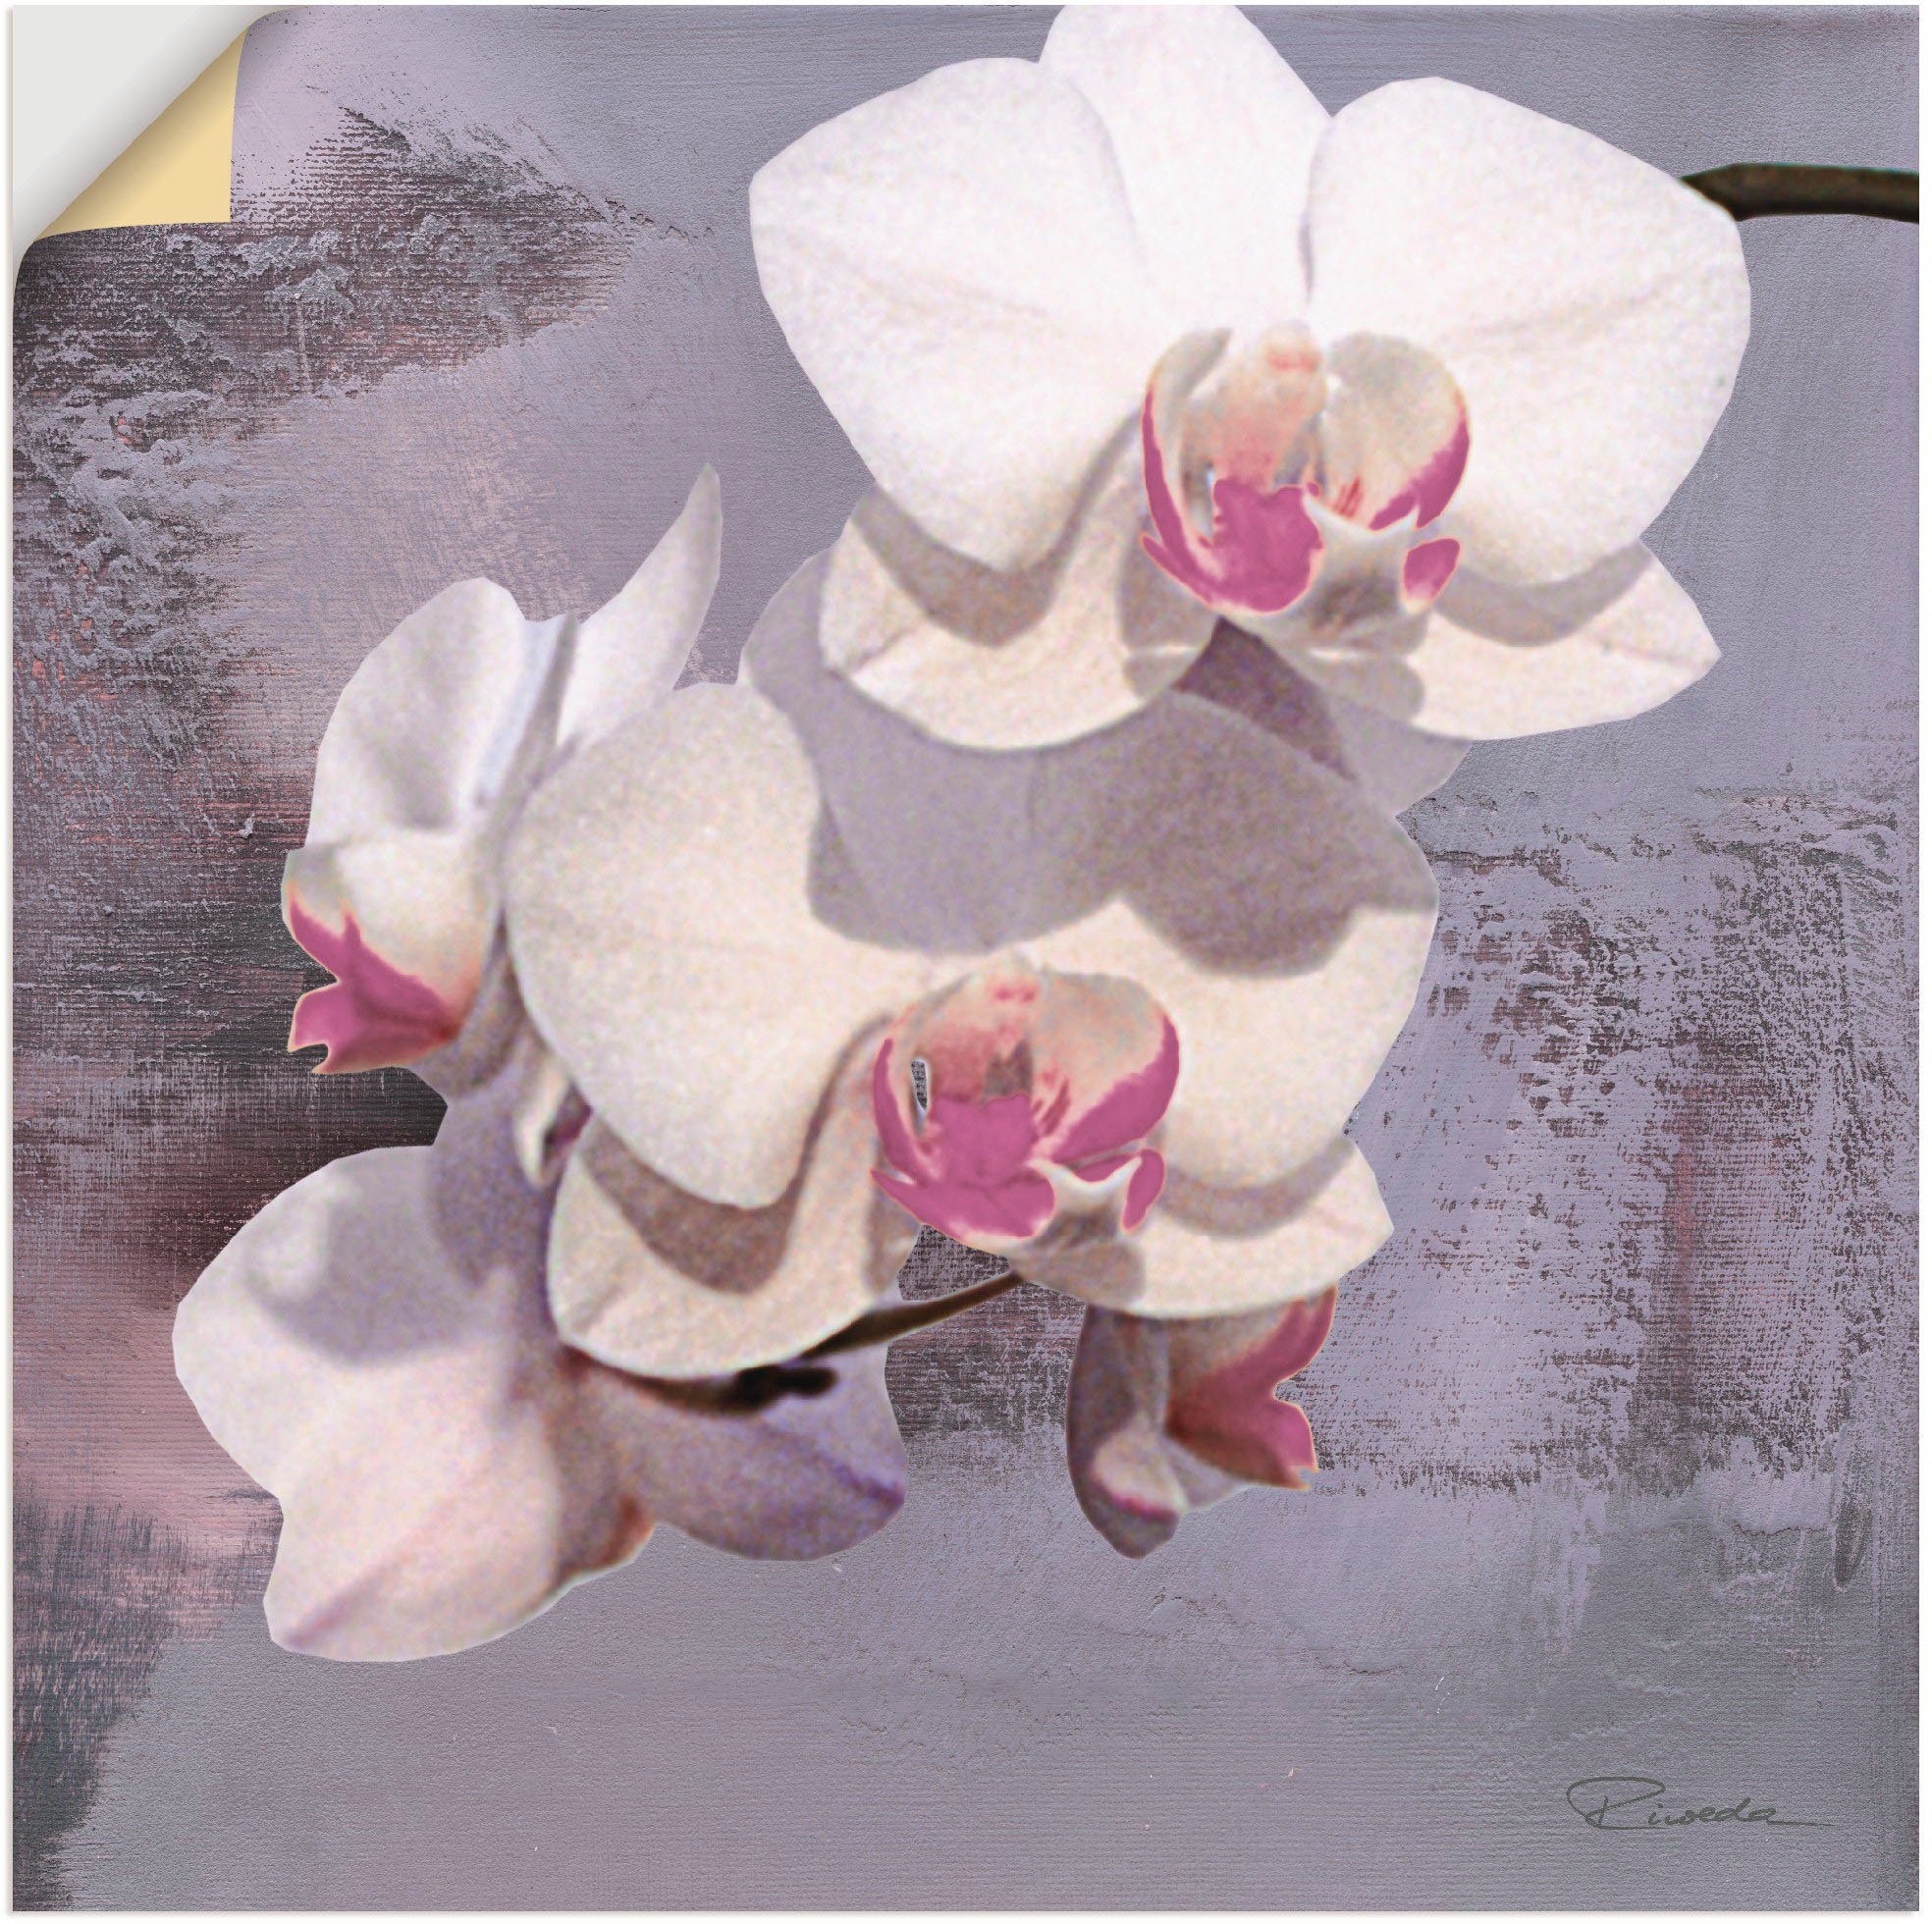 Artland Artprint Orchideeën voor violet II in vele afmetingen & productsoorten - artprint van aluminium / artprint voor buiten, artprint op linnen, poster, muursticker / wandfolie